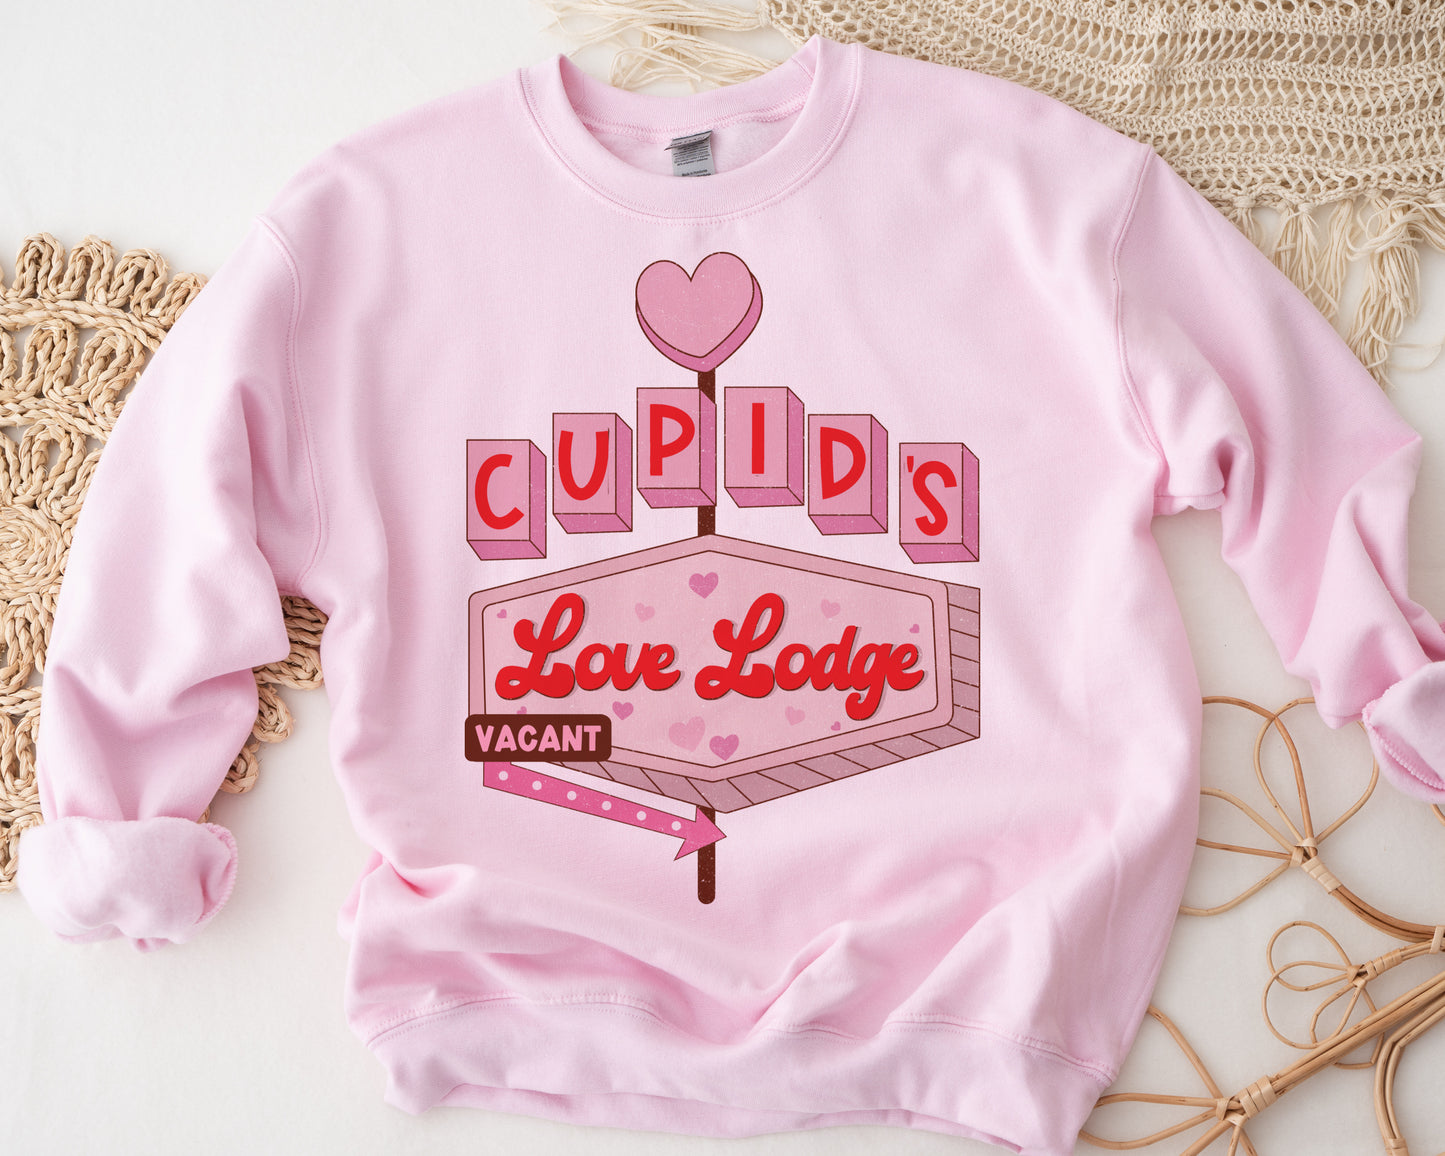 Cupids love lodge